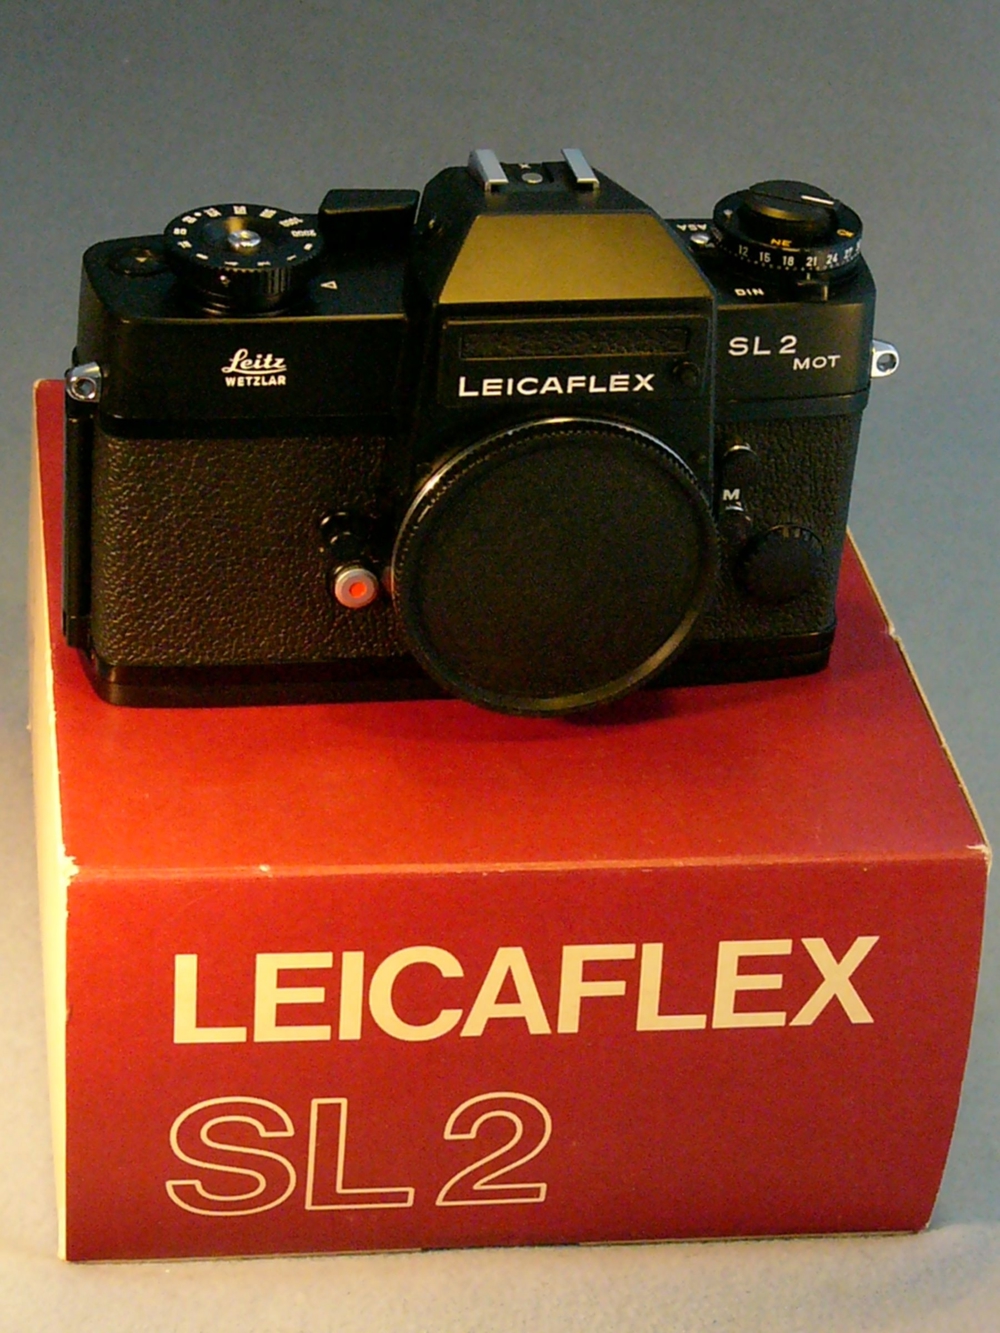 Leica Leicaflex SL2 Mot fabrikneu im Originalkarton